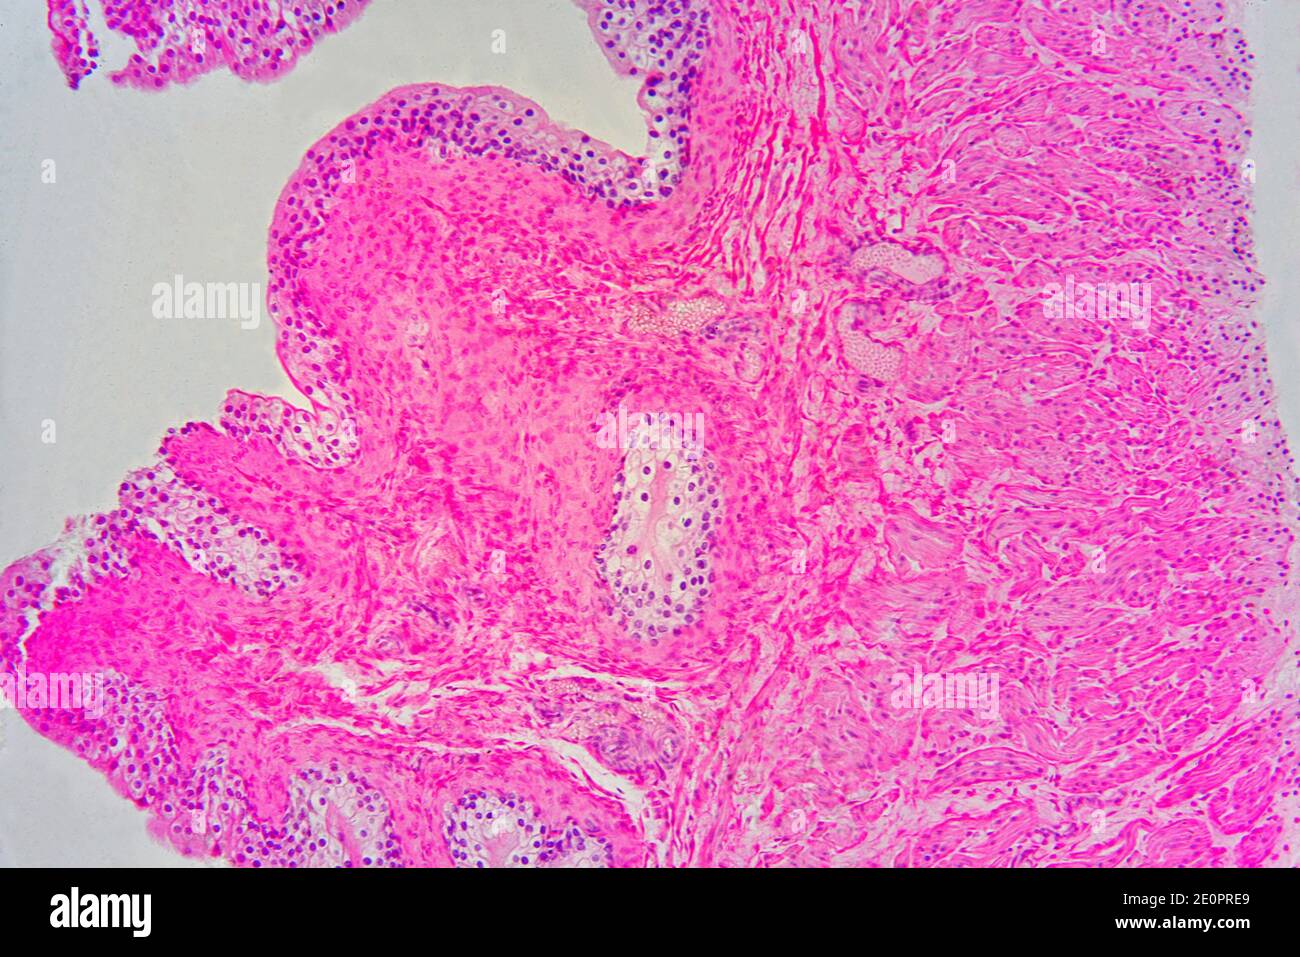 Vescica urinaria con urotelio (epitelio transitorio), tessuto connettivo e fibre muscolari lisce. Fotomicrografo X75 con larghezza di 10 cm. Foto Stock